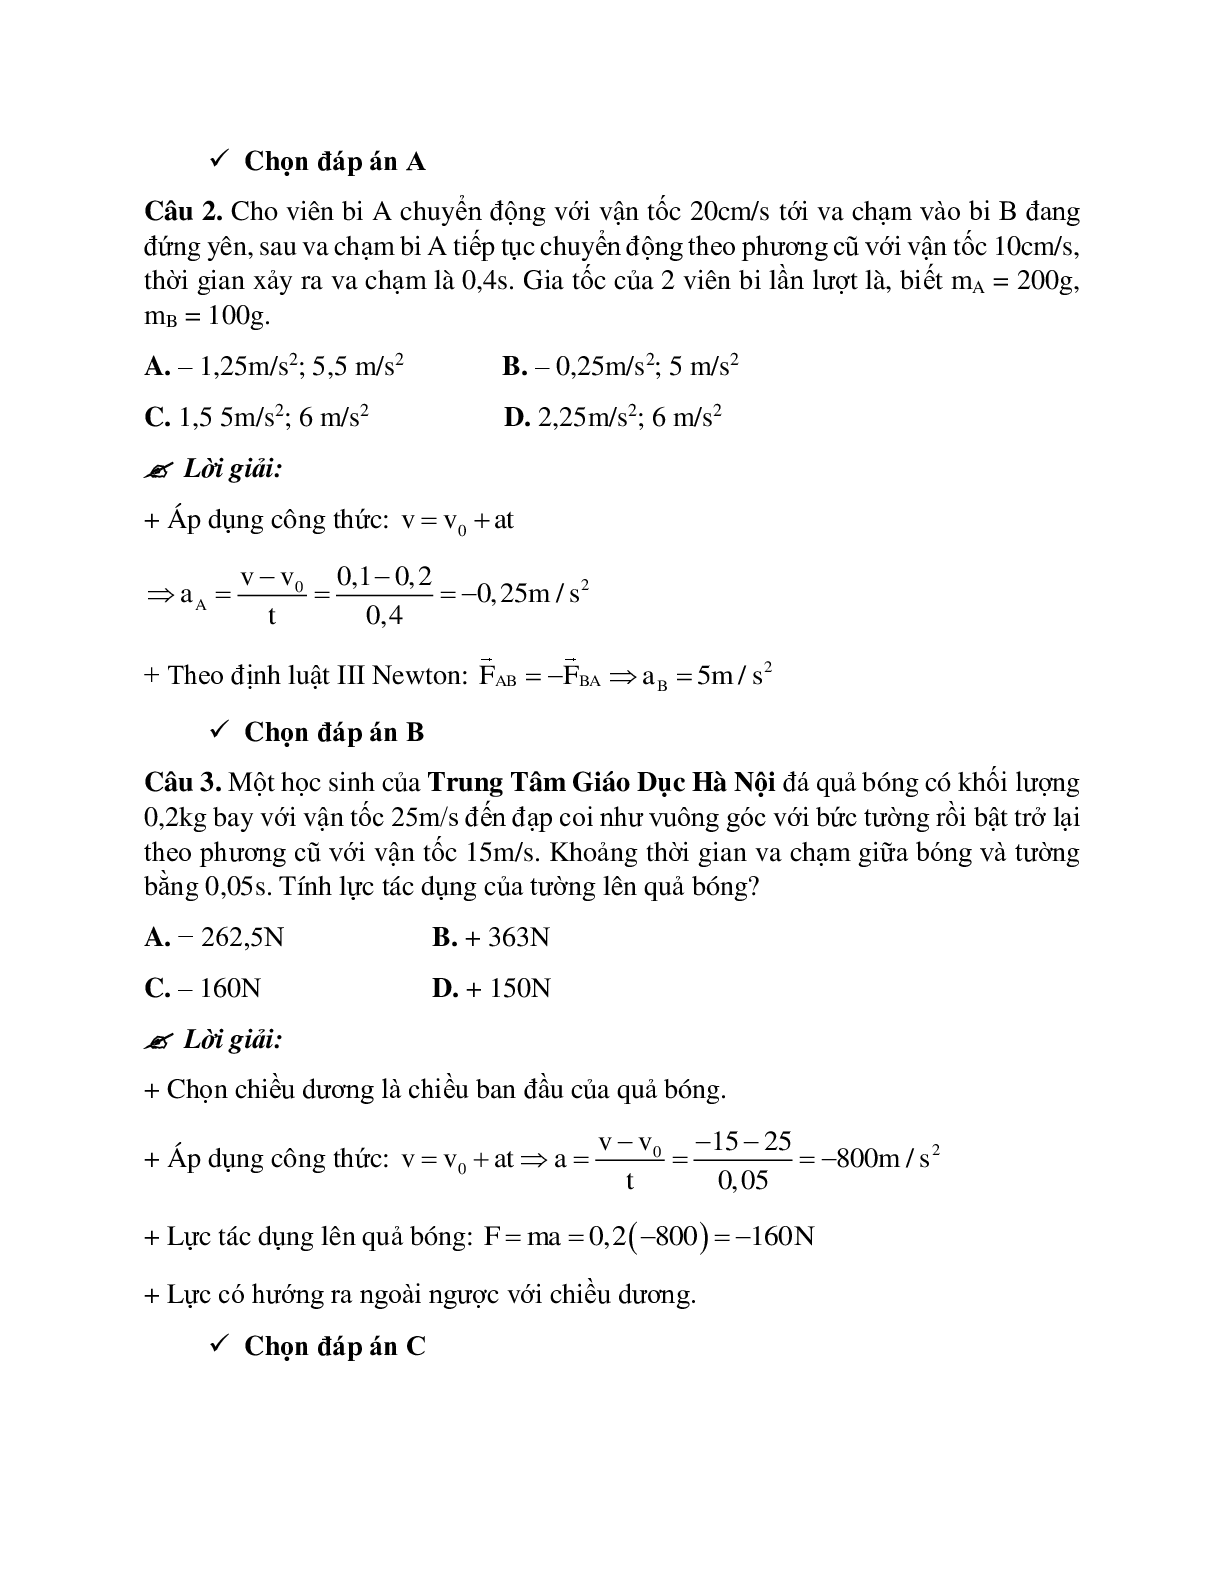 Phương pháp giải và bài tập về Bài toán hai vật va chạm nhau - định luật III Newton chọn lọc (trang 5)